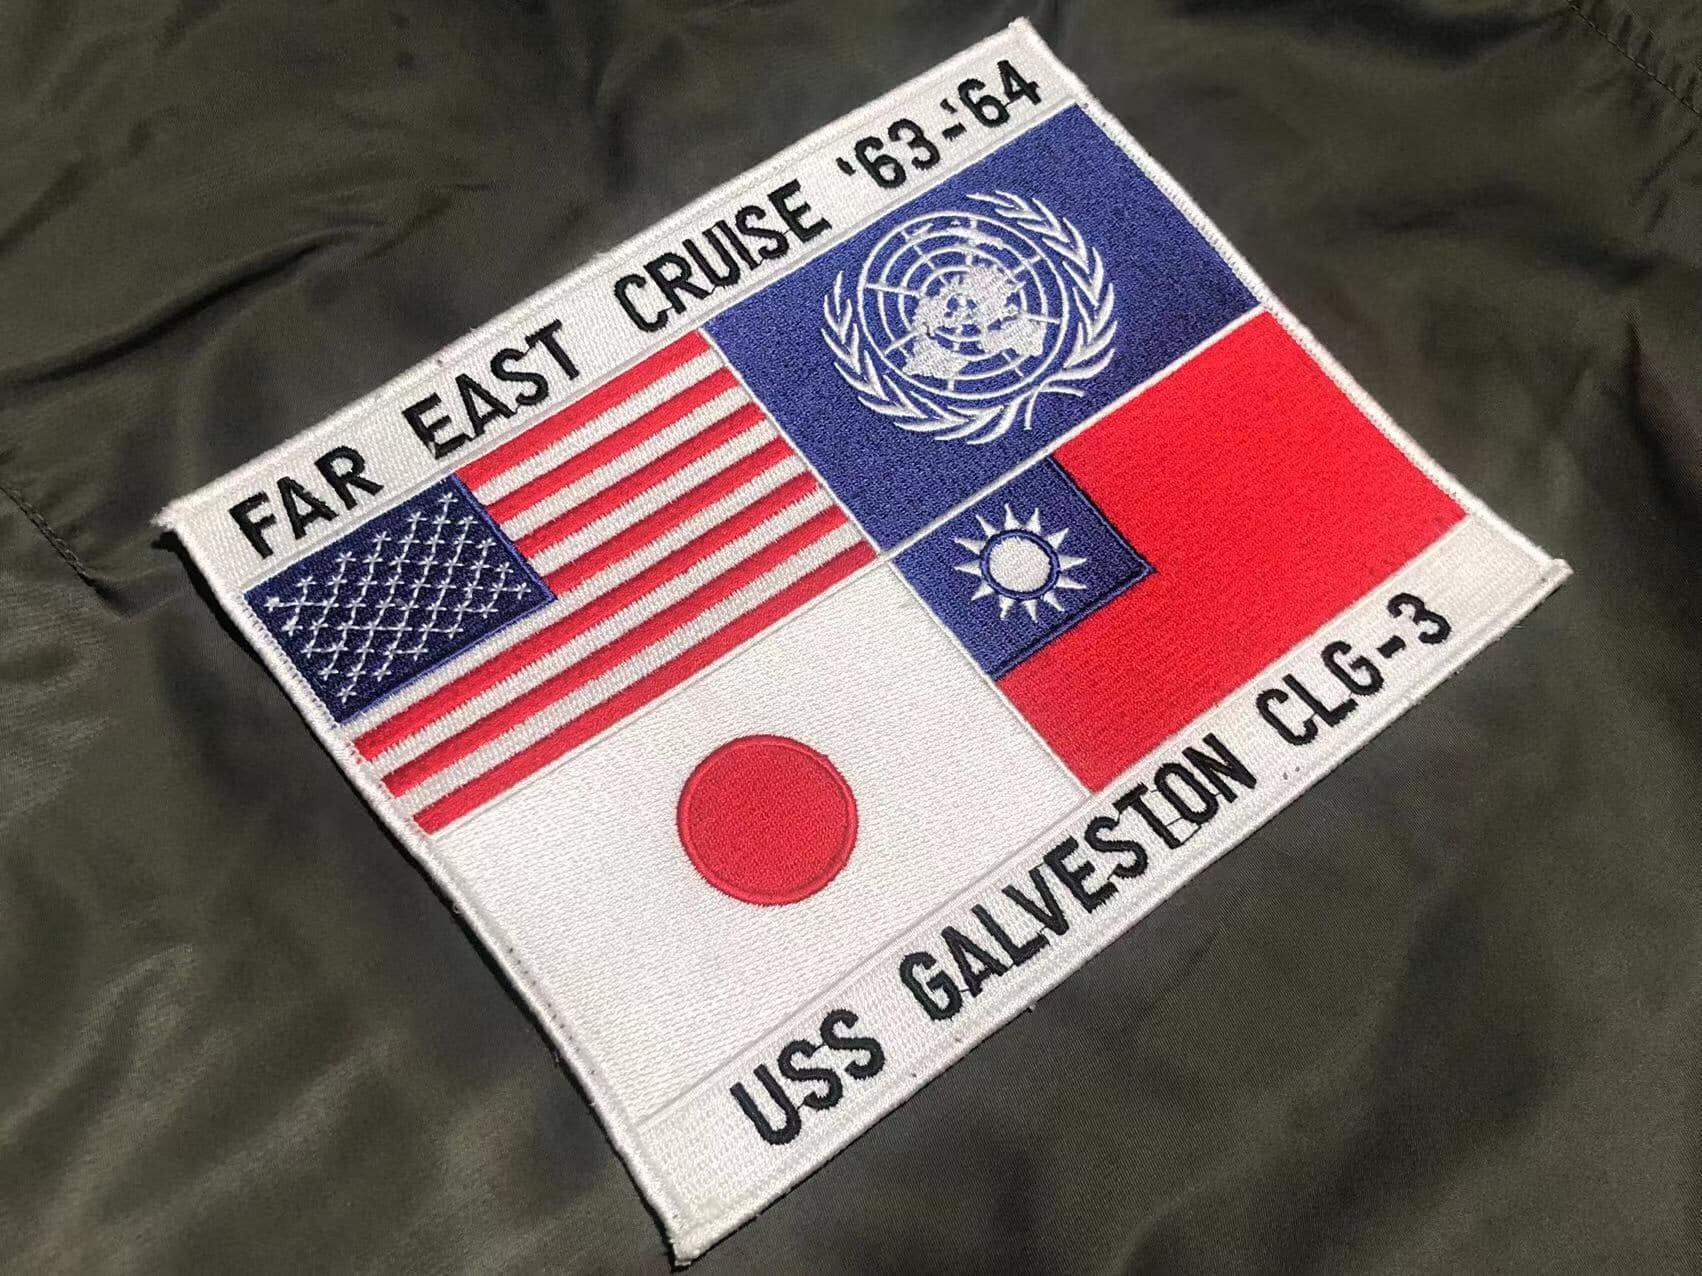 【捍衛戰士TOPGUN】預購三週/加爾維斯頓巡洋艦USS Galveston CLG-3遠東巡弋紀念FAR EAST CRUISE ‘63-‘64  紀念章/中華民國國旗